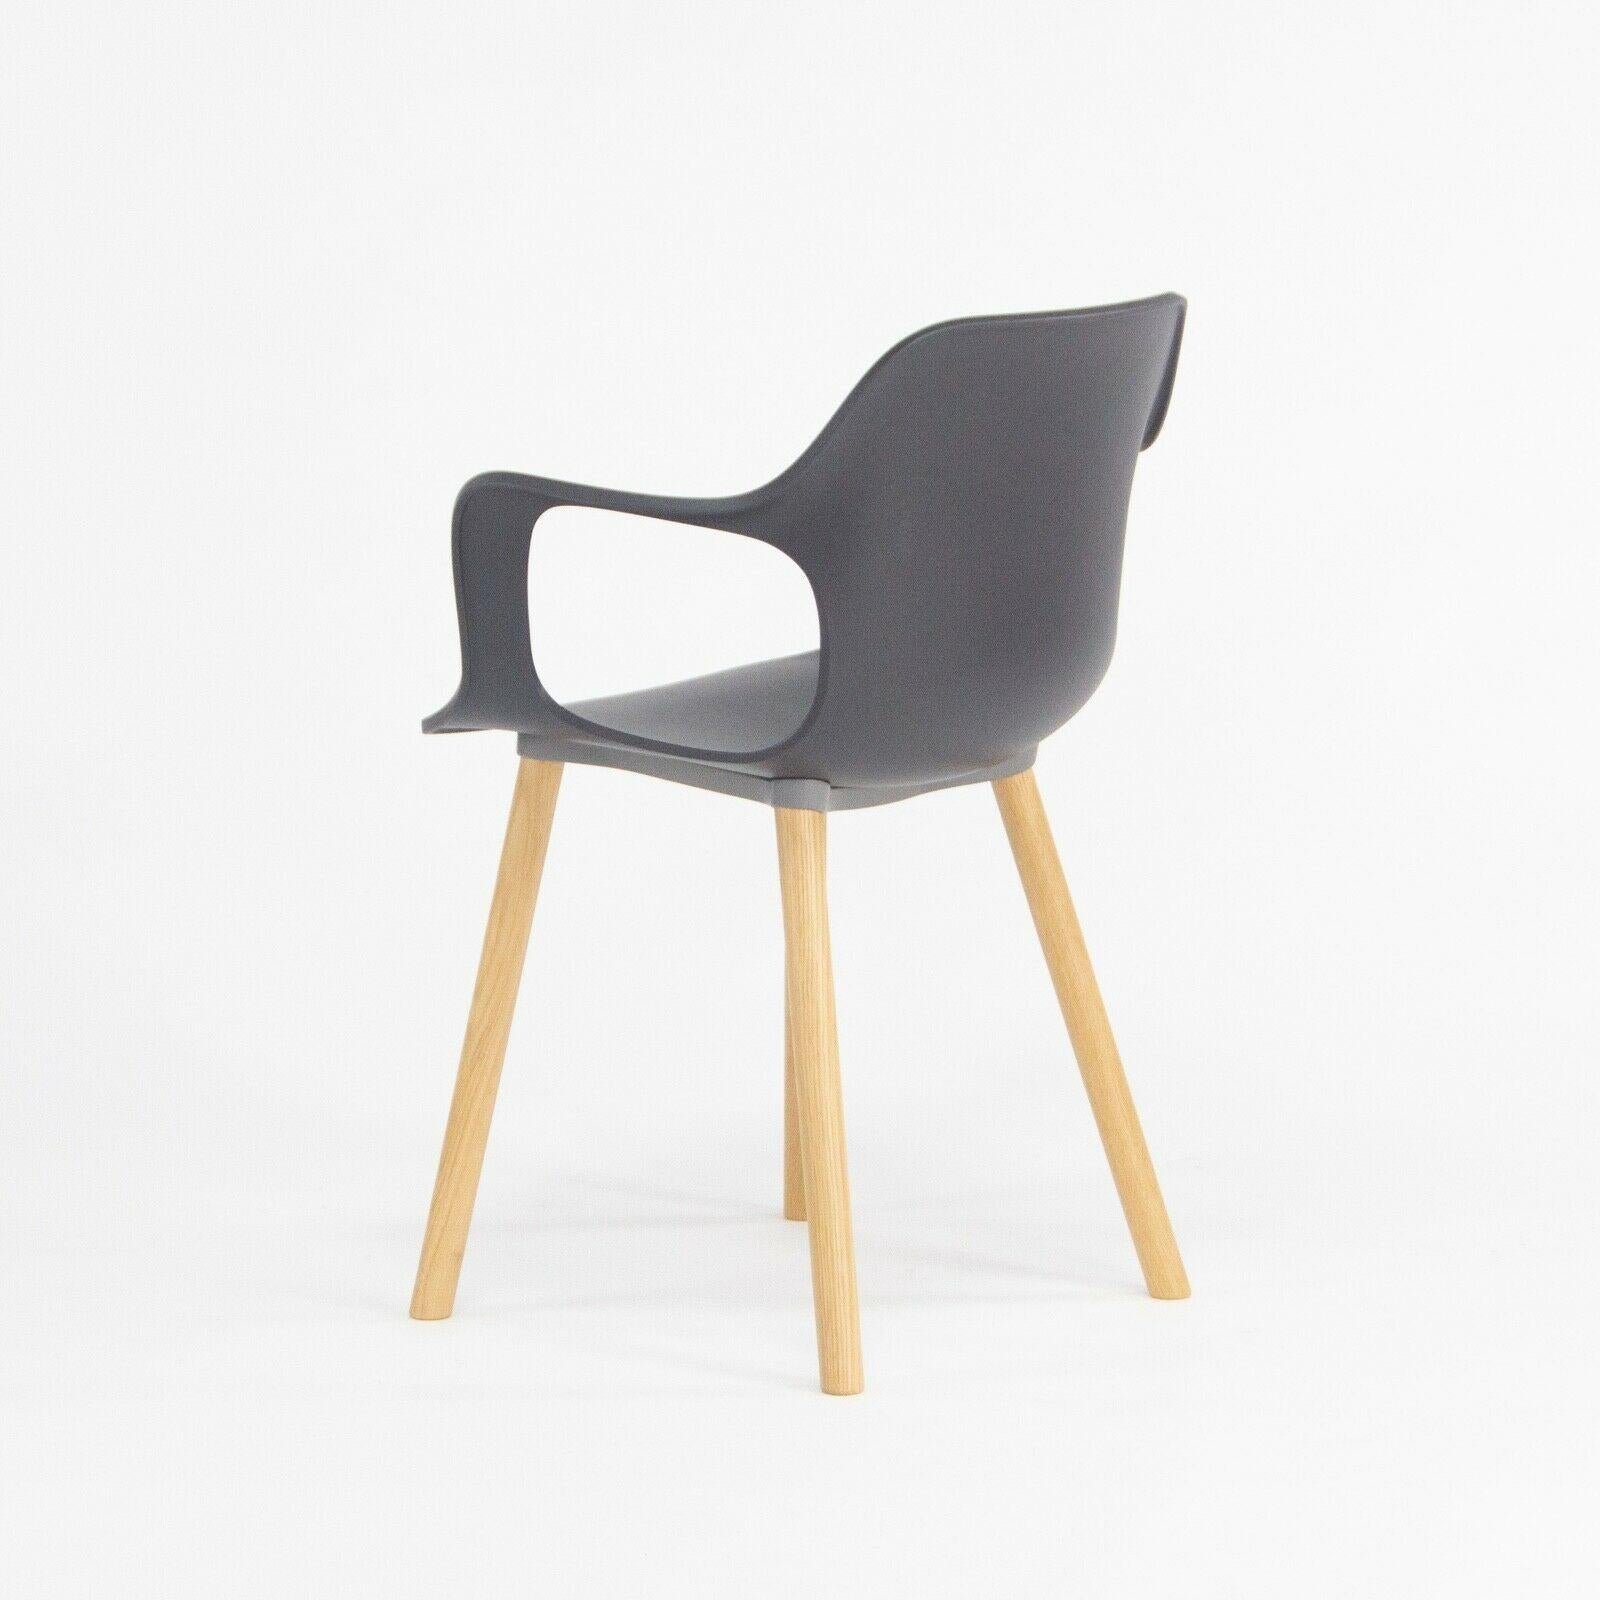 Zum Verkauf steht ein HAL Sessel mit natürlichen Eichenholzbeinen, entworfen von Jasper Morrison und hergestellt von Vitra.
Dieser Stuhl wurde mit einem schwarzen Kunststoffsitz und Eichenholzbeinen ausgestattet. Der Stuhl weist nur minimale oder